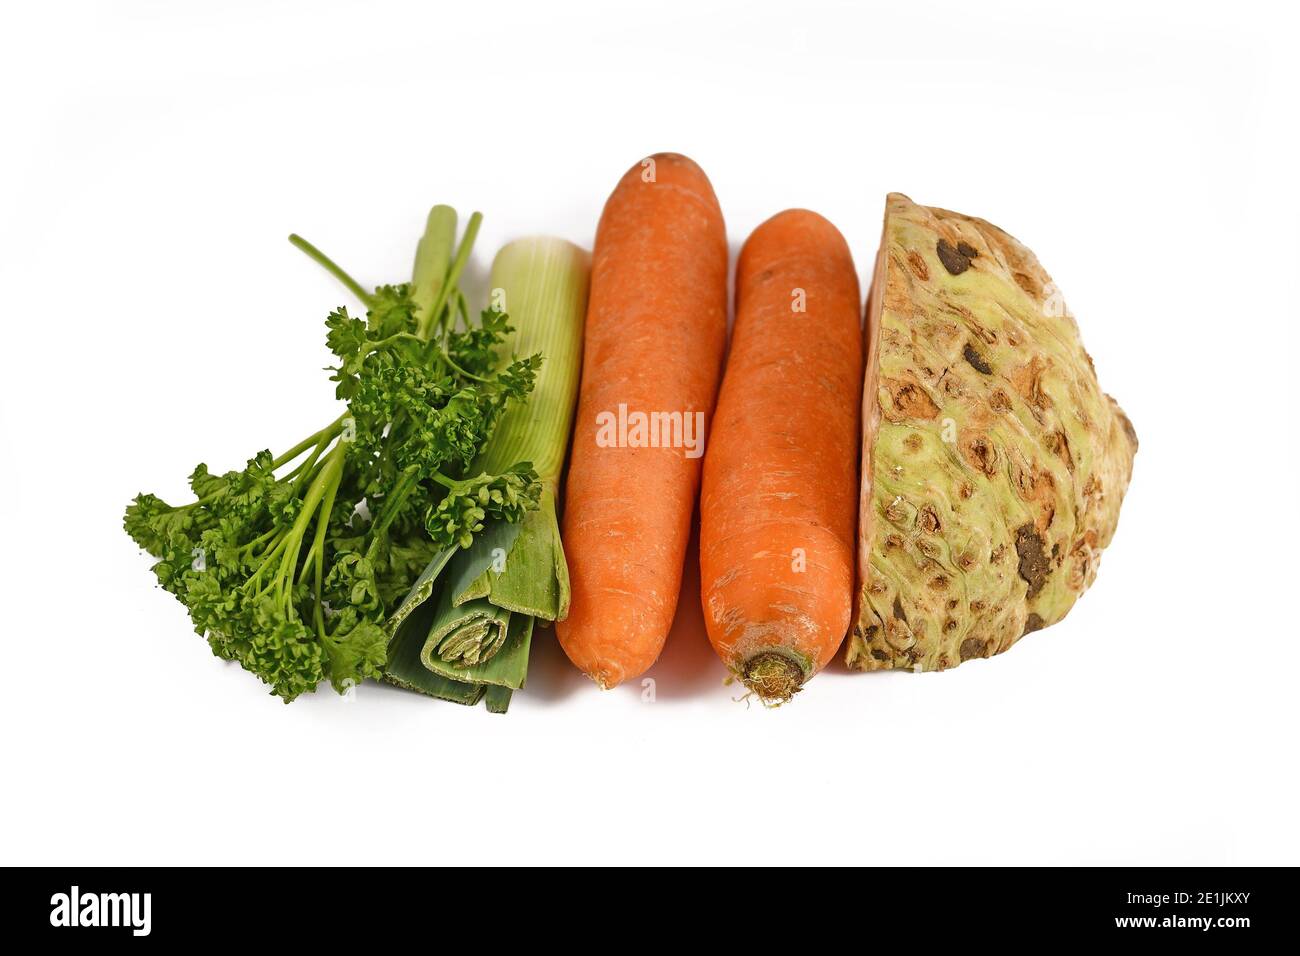 Mazzetto di zuppe di verdure contenenti carote, porri, prezzemolo e radice di sedano isolato su fondo bianco. Tradizionalmente venduto in bundlesin germania Foto Stock